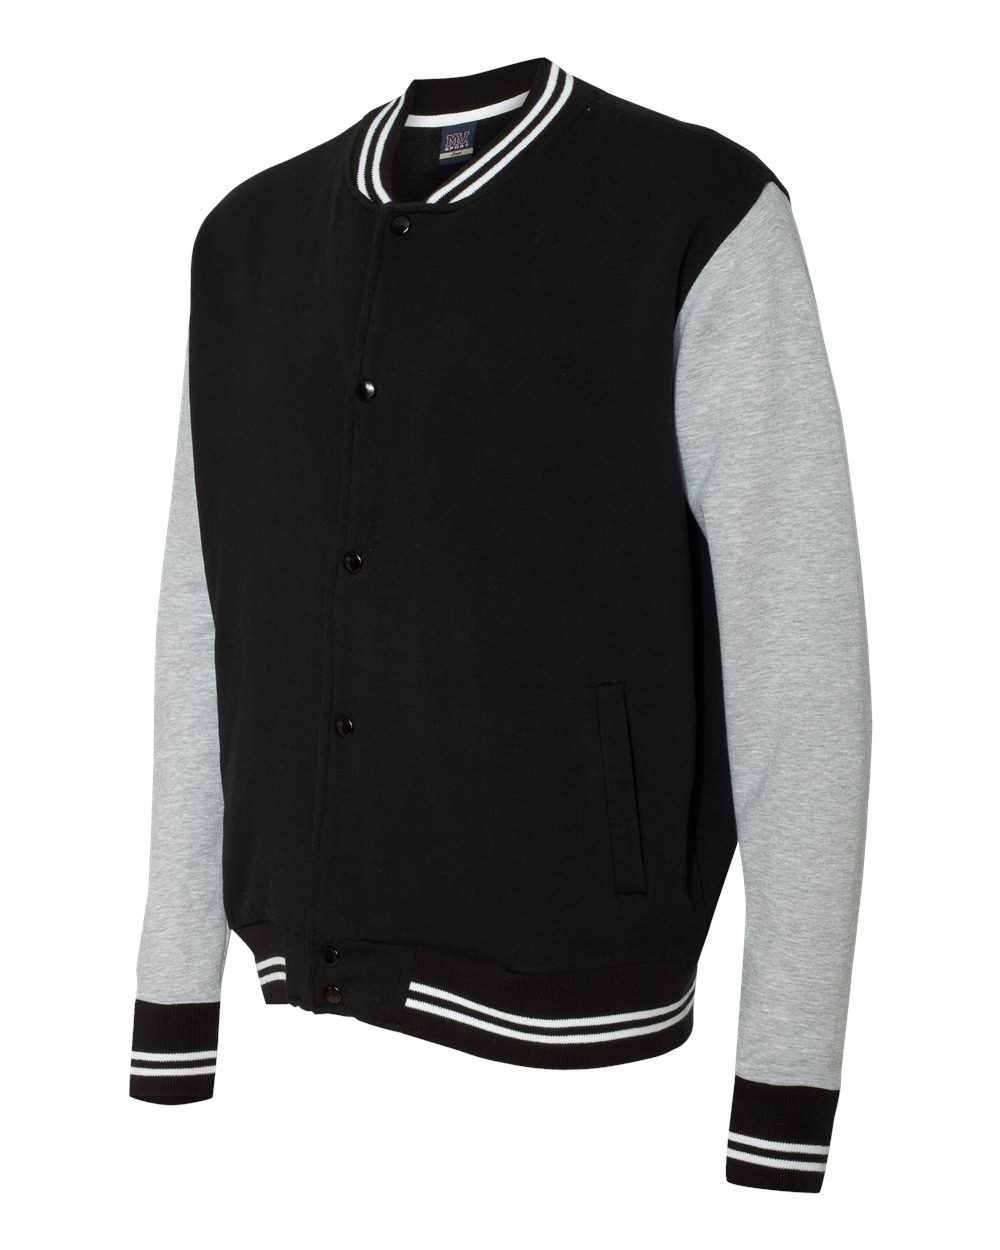 MV Sport Varsity Sweatshirt Jacket - 2369